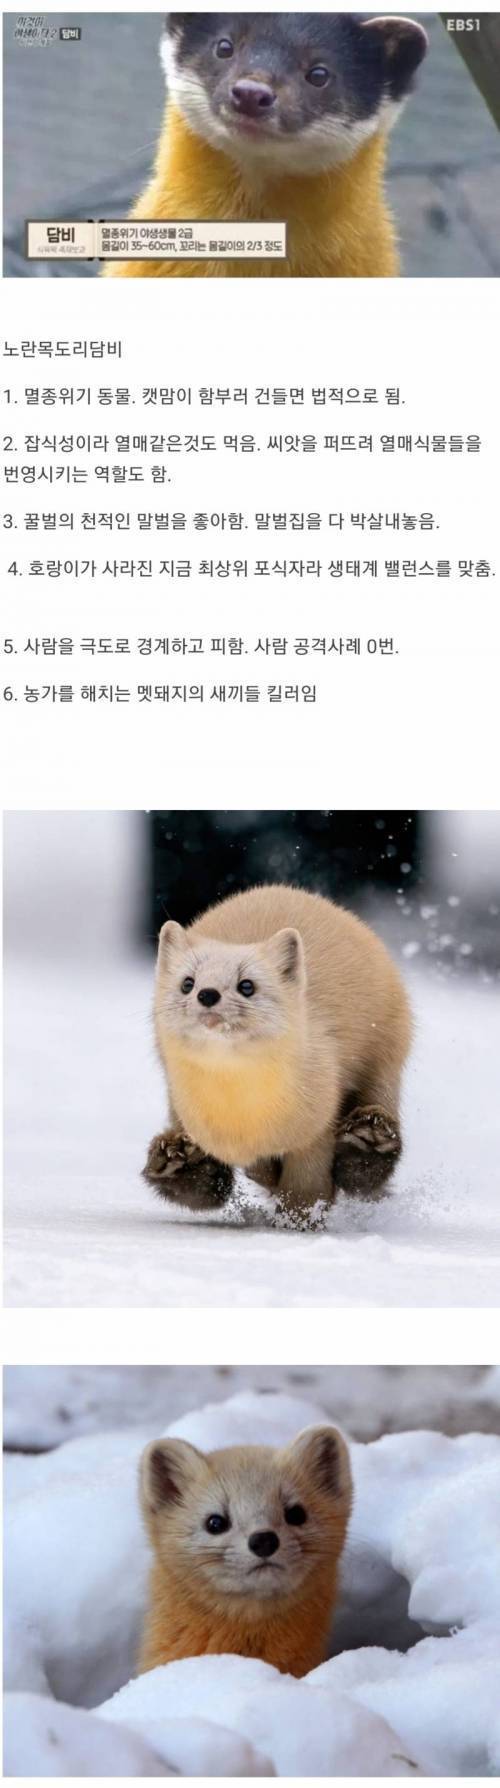 한국 생태계 최상급인 동물.jpg